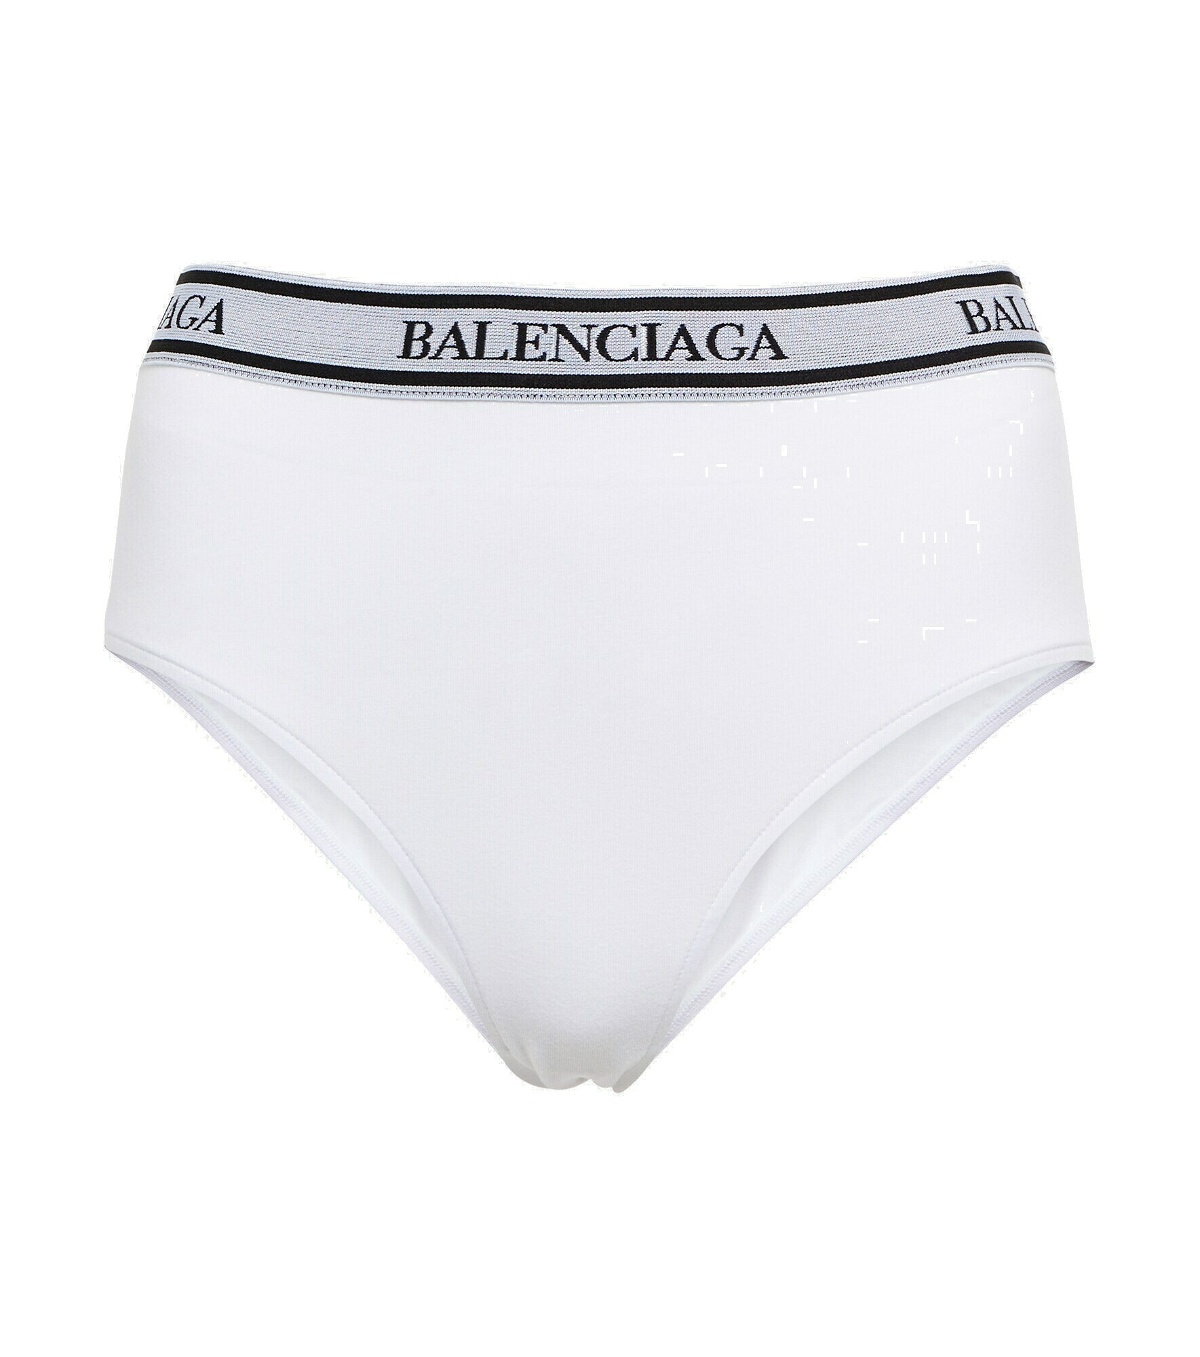 Balenciaga - Cotton jersey briefs Balenciaga